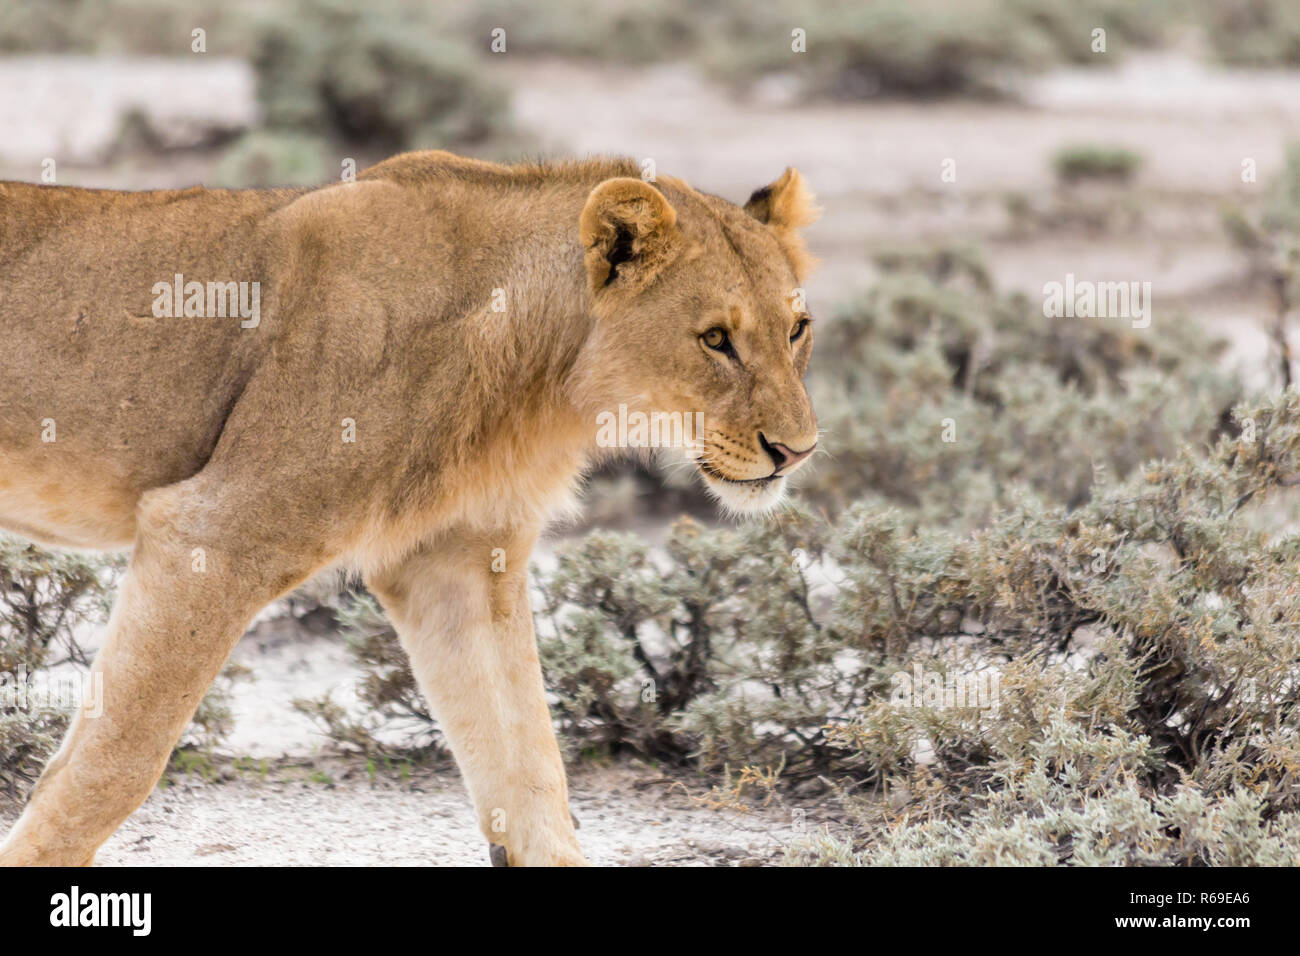 Lion, Etosha National Park, Namibia Stock Photo